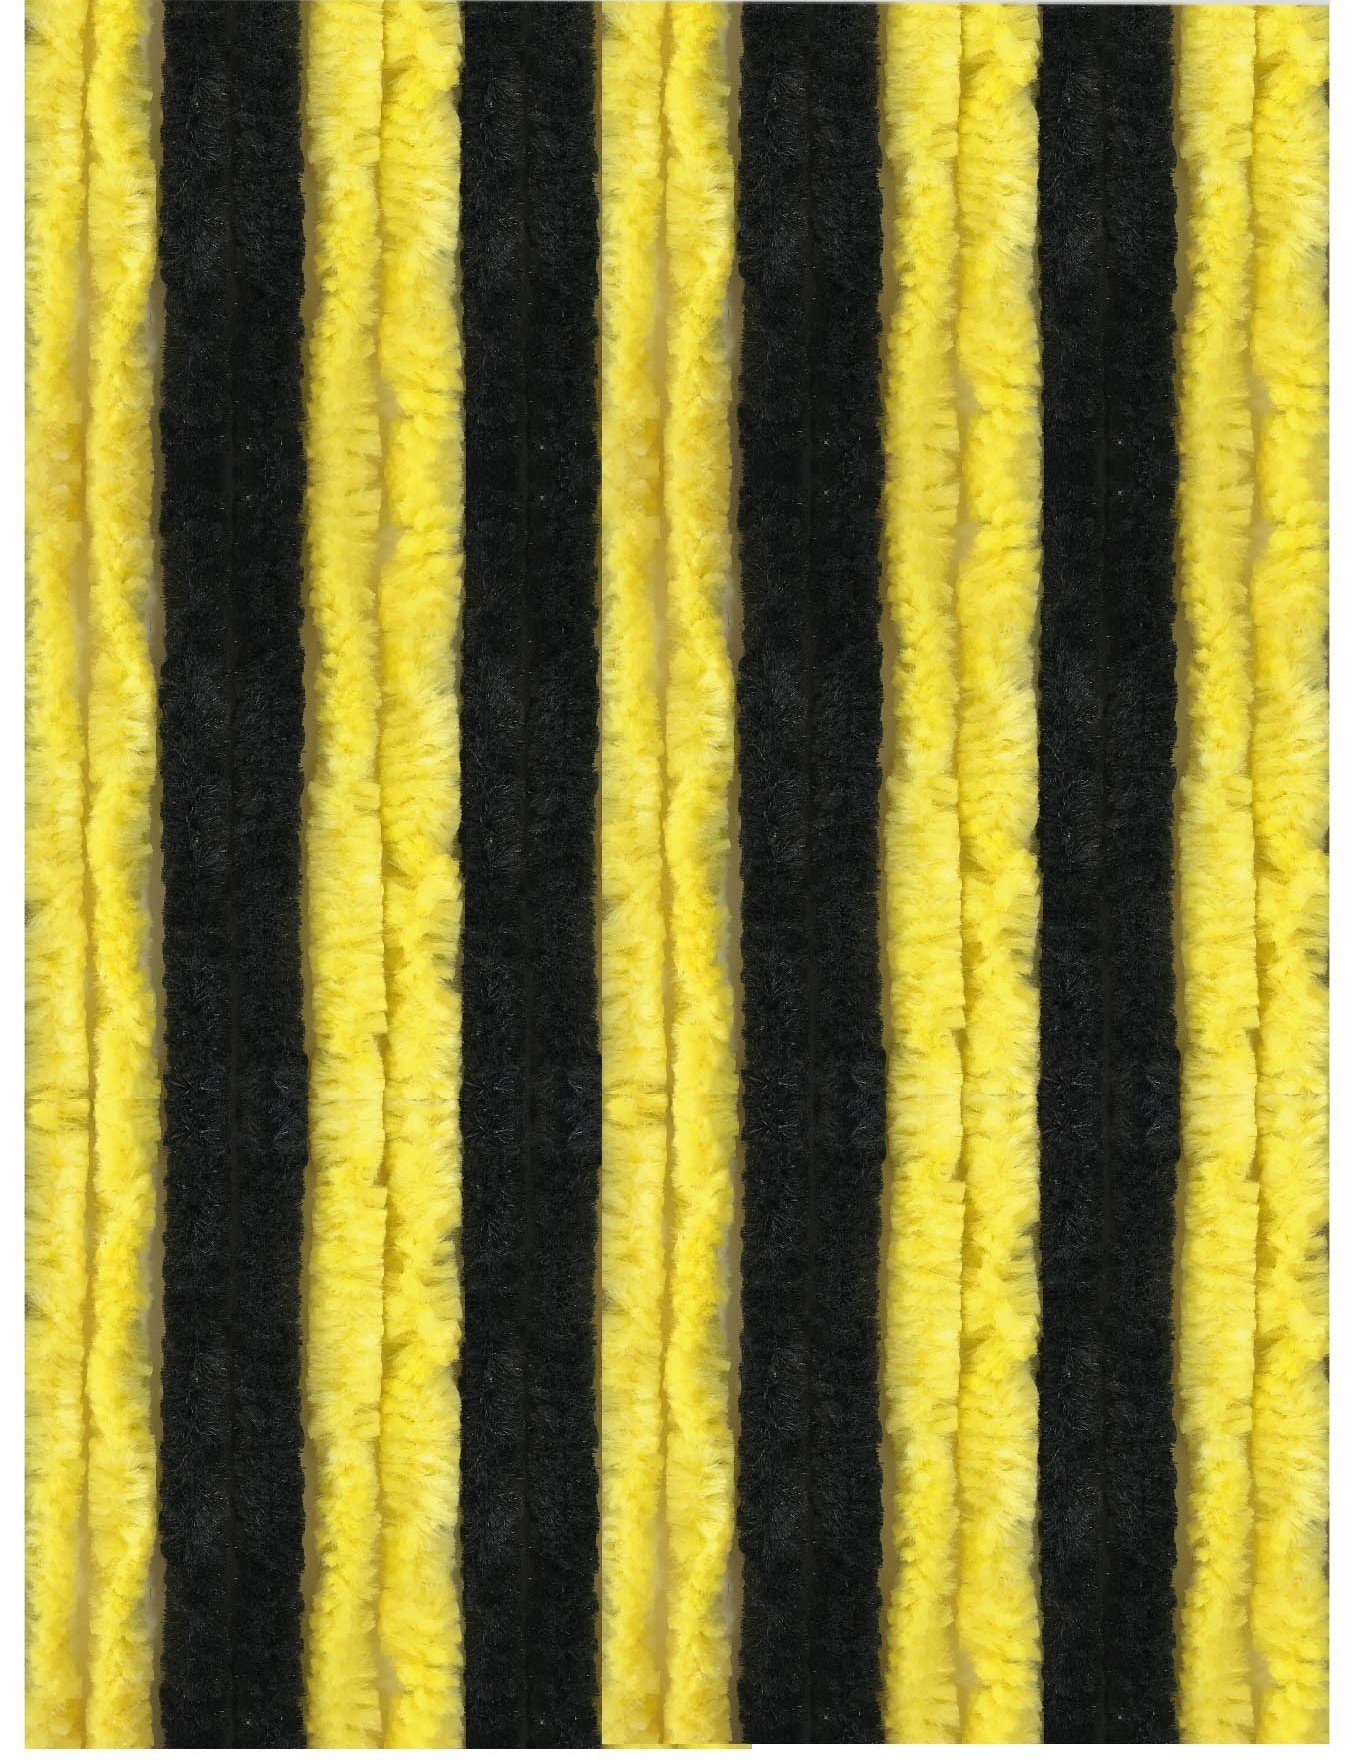 Türvorhang Flausch, Arsvita, Ösen (1 St), blickdicht, Flauschvorhang 100x200cm (BxL), perfekter Insekten- und Sichtschutz, viele versch. Farben verfügbar Schwarz - Gelb | Raumteiler-Vorhänge